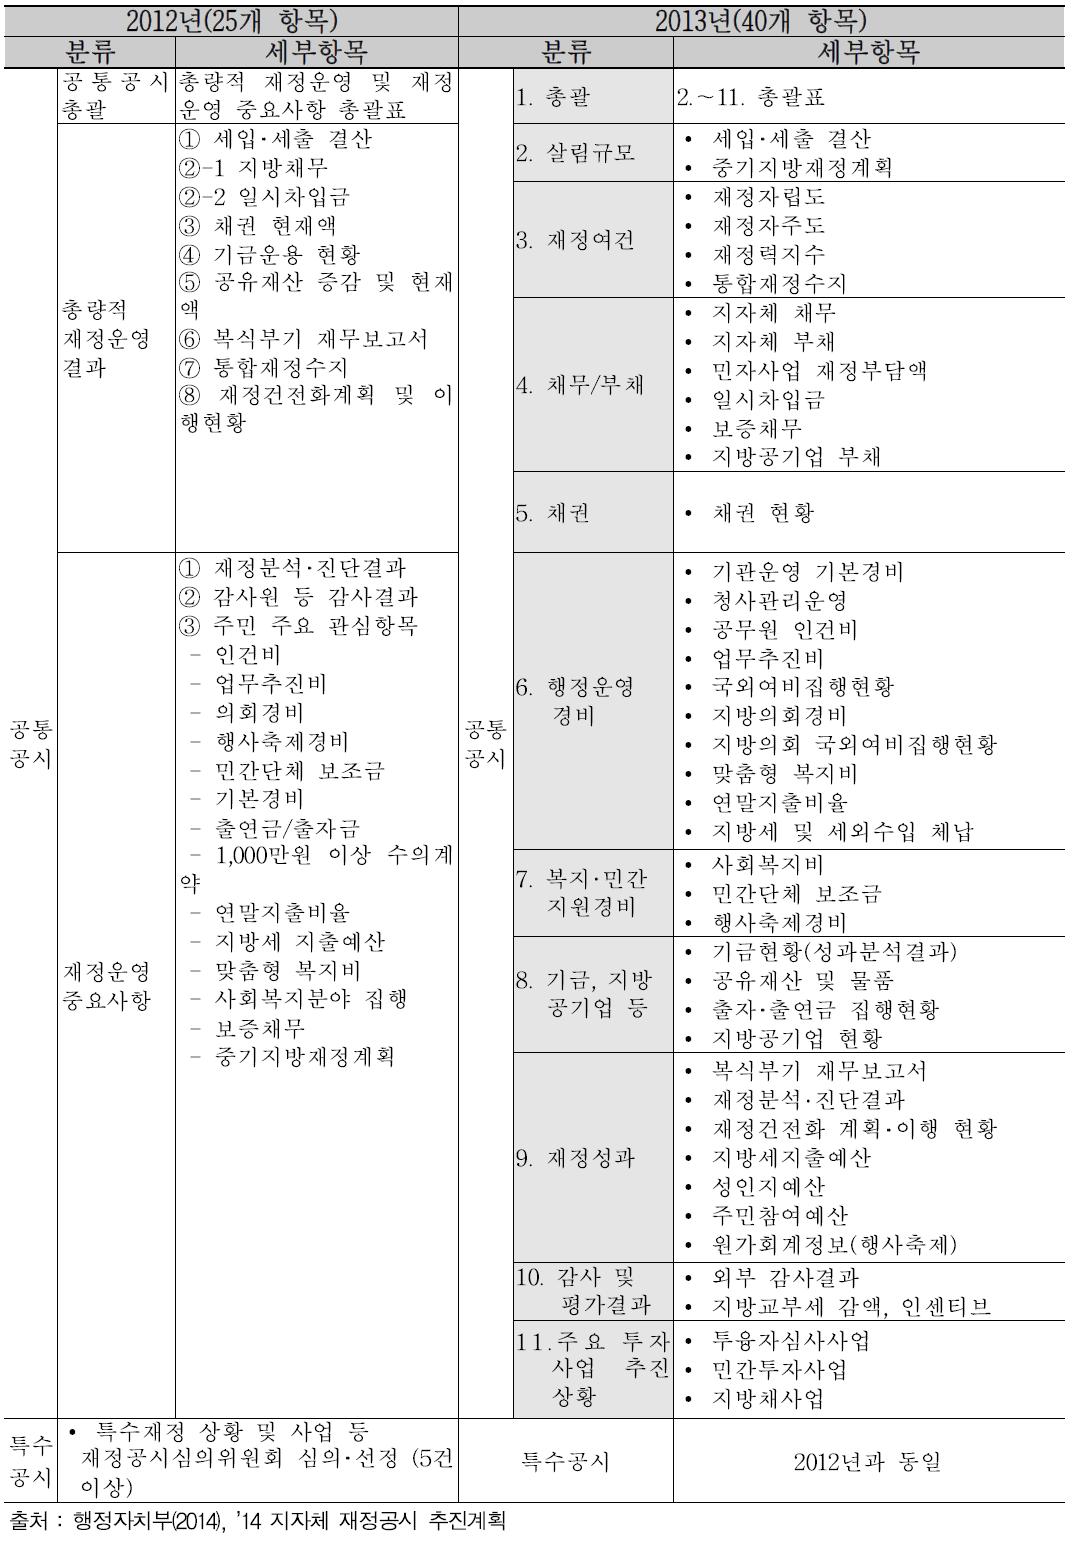 2013년 지자체 재정공시 및 통합공시 항목 : 지자체 재정공시(25개→40개 항목)